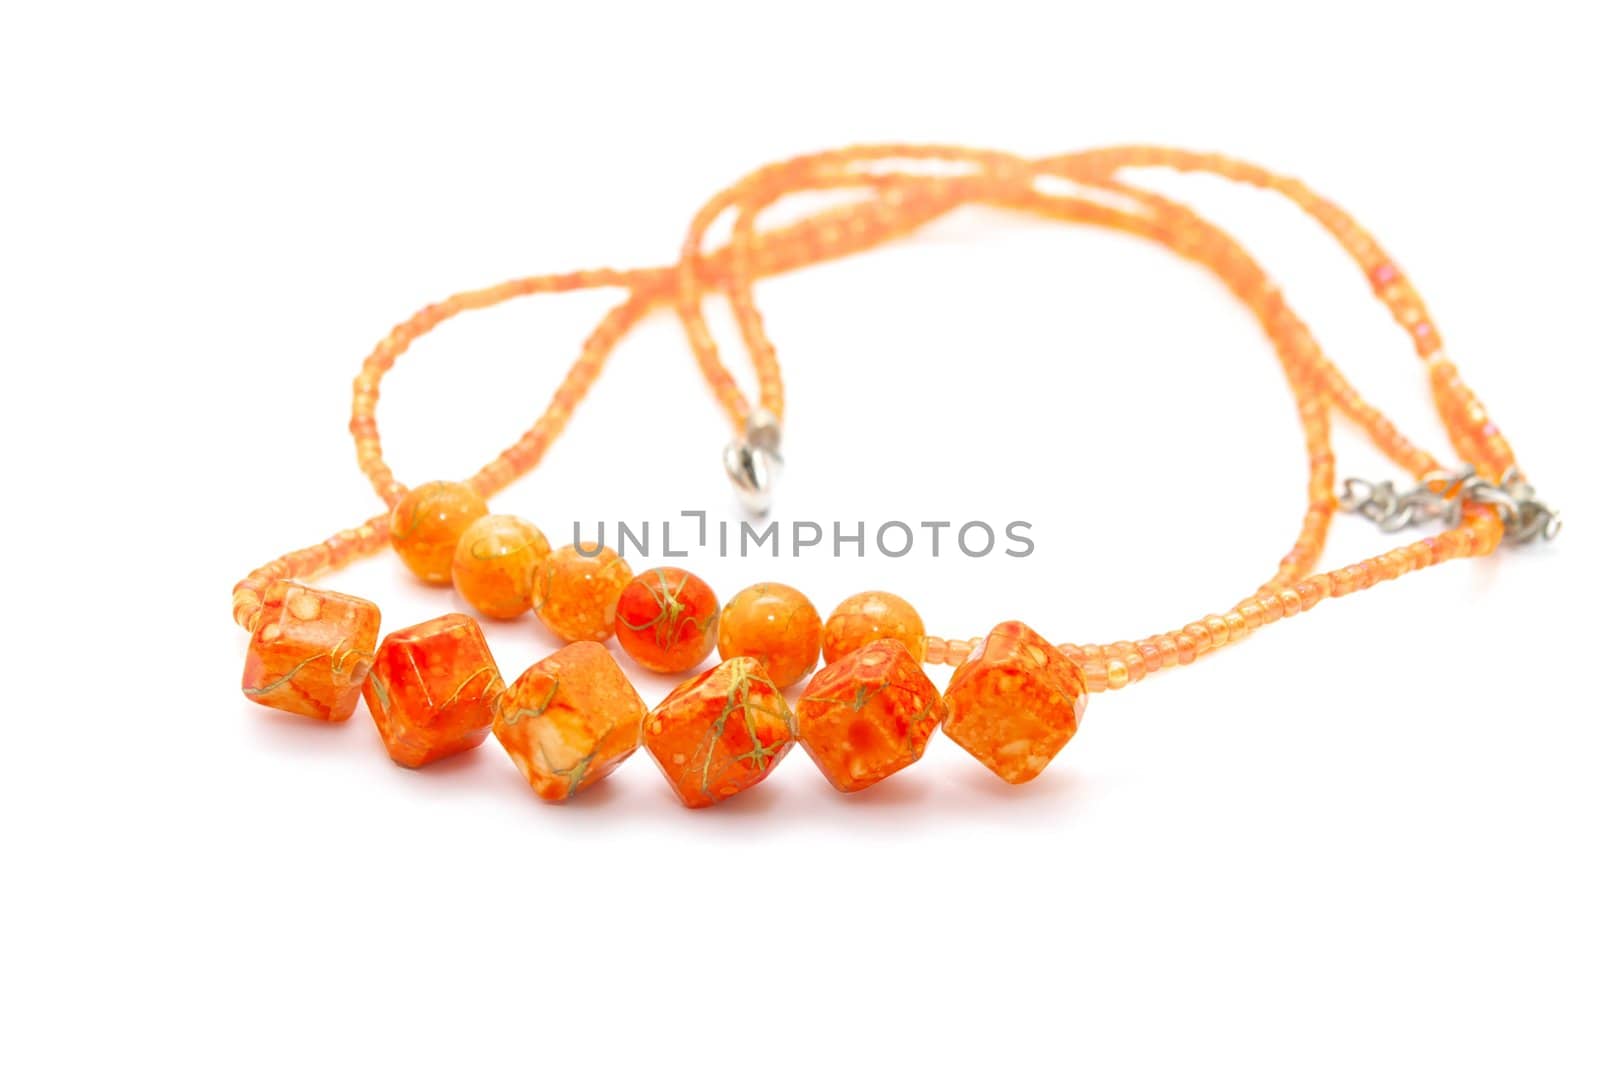 photo of the beautiful orange necklace on white background